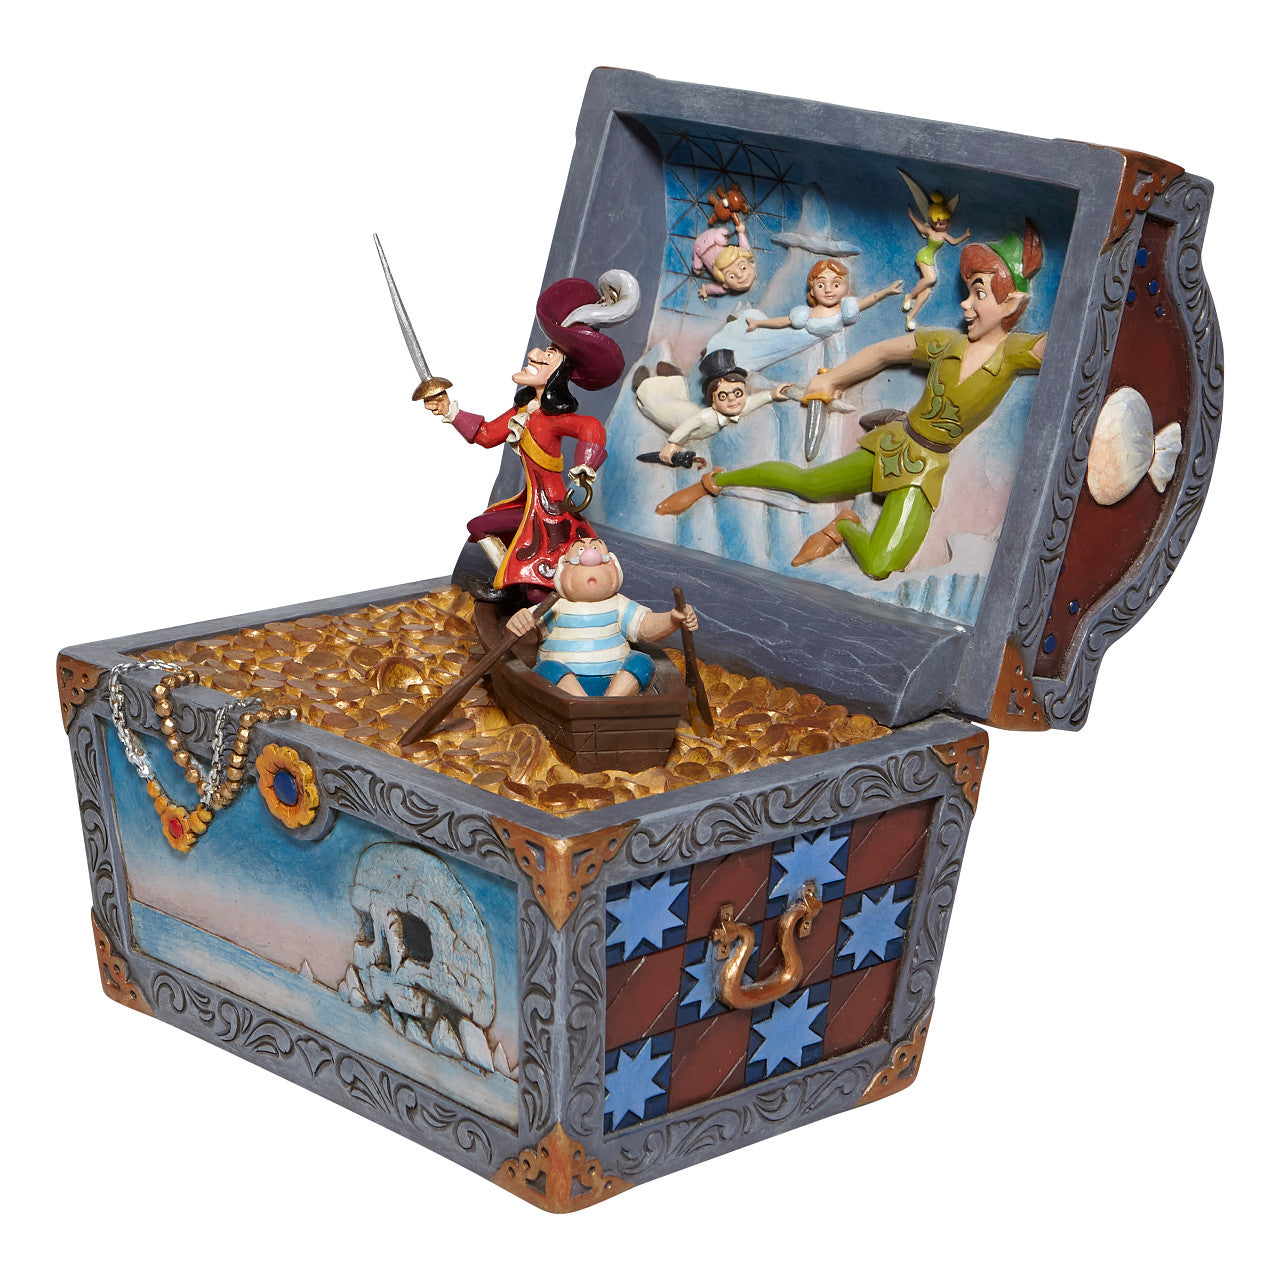 Treasure strewn Tableau - Peter Pan Flying Scene